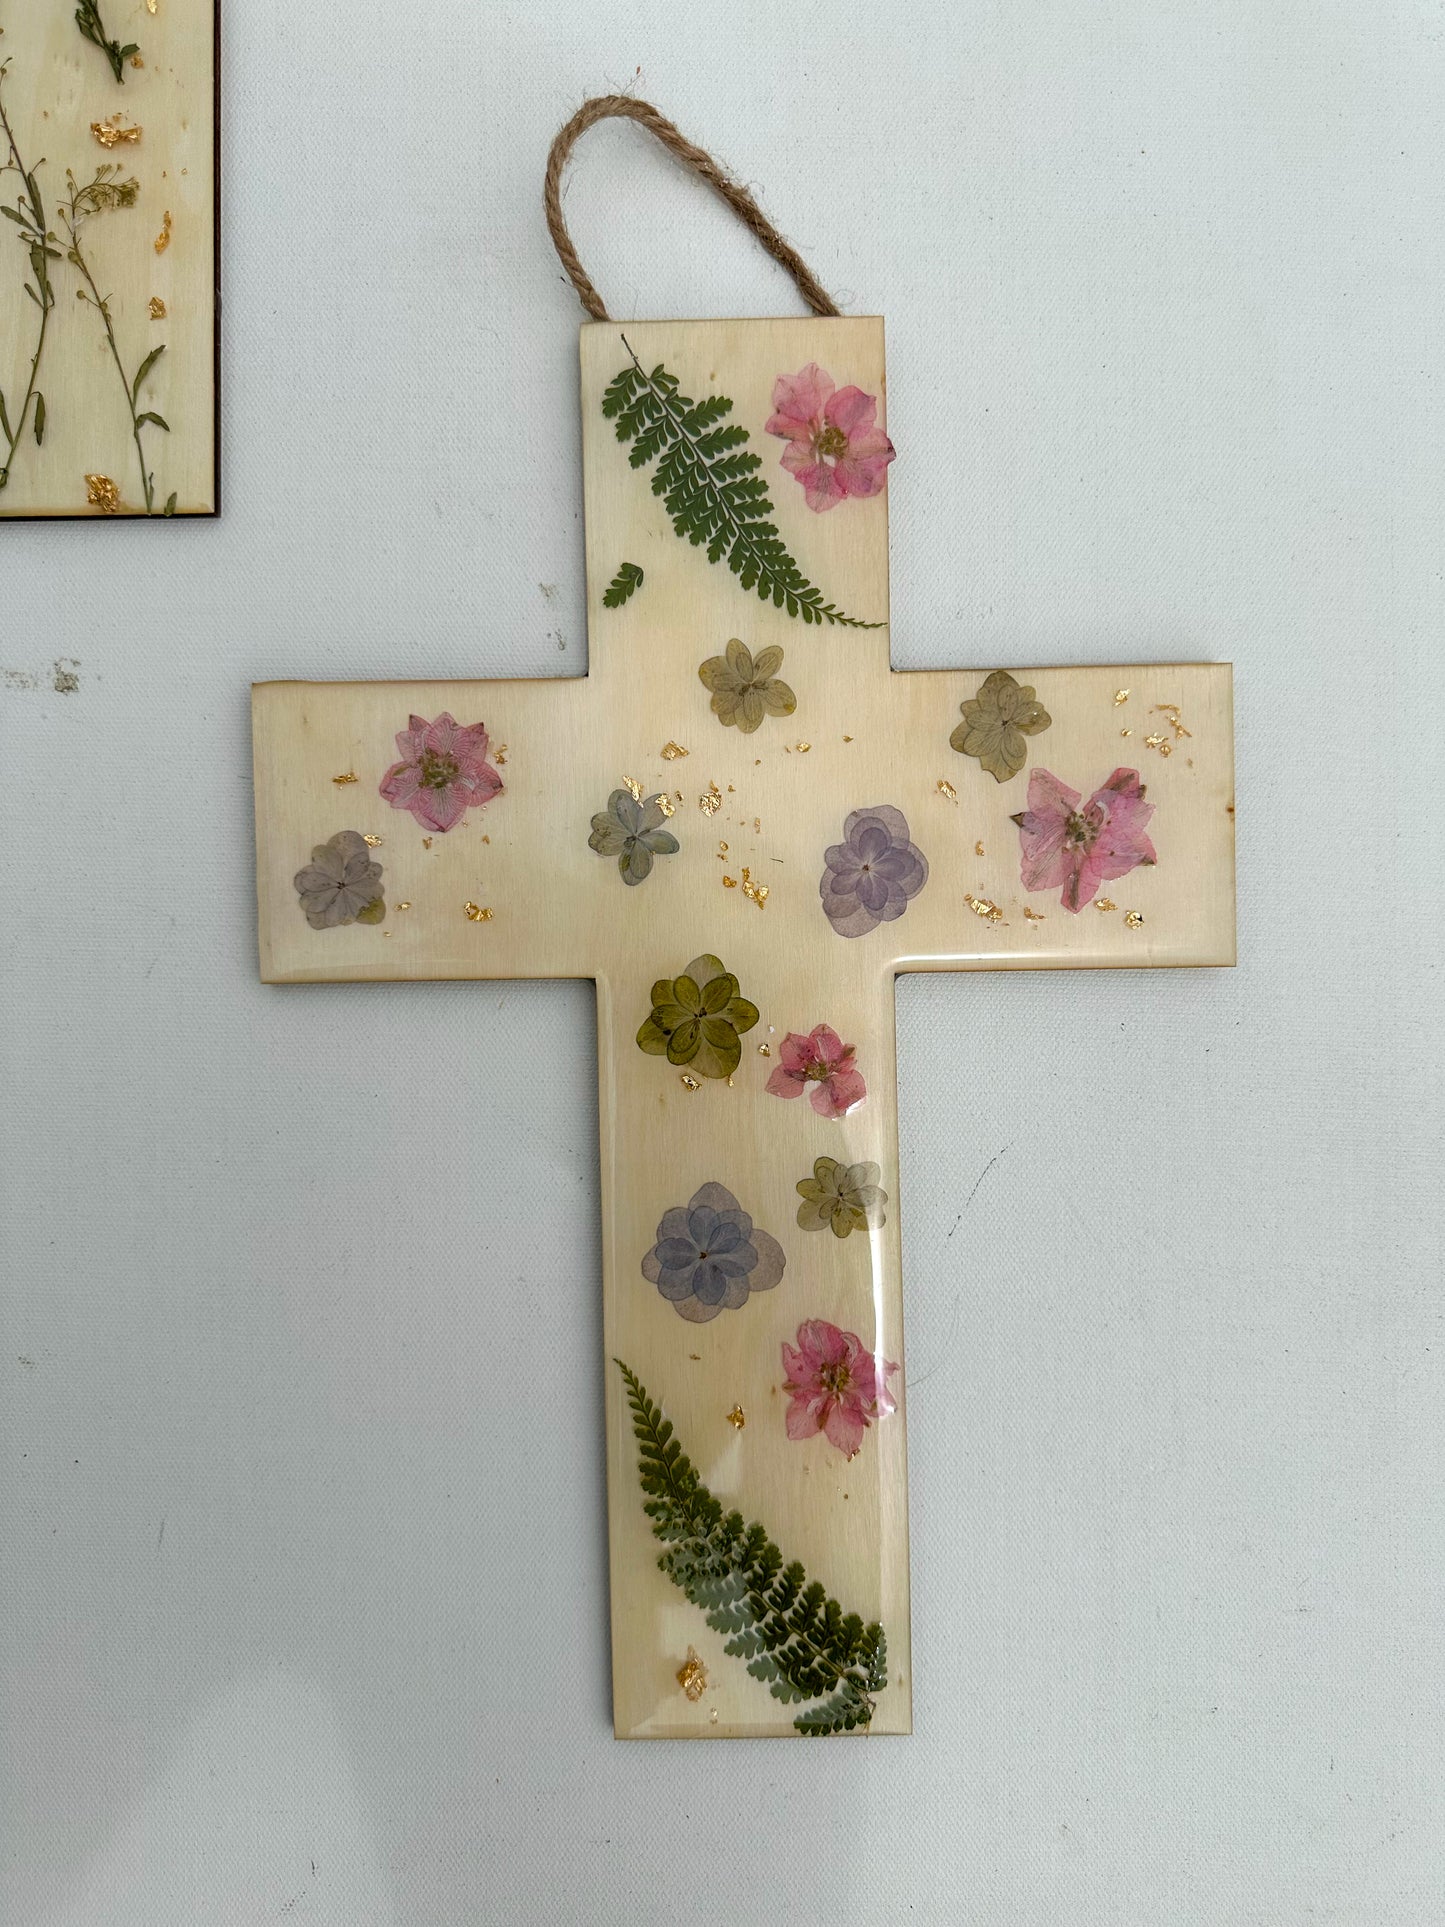 Flowered Cross front door sign